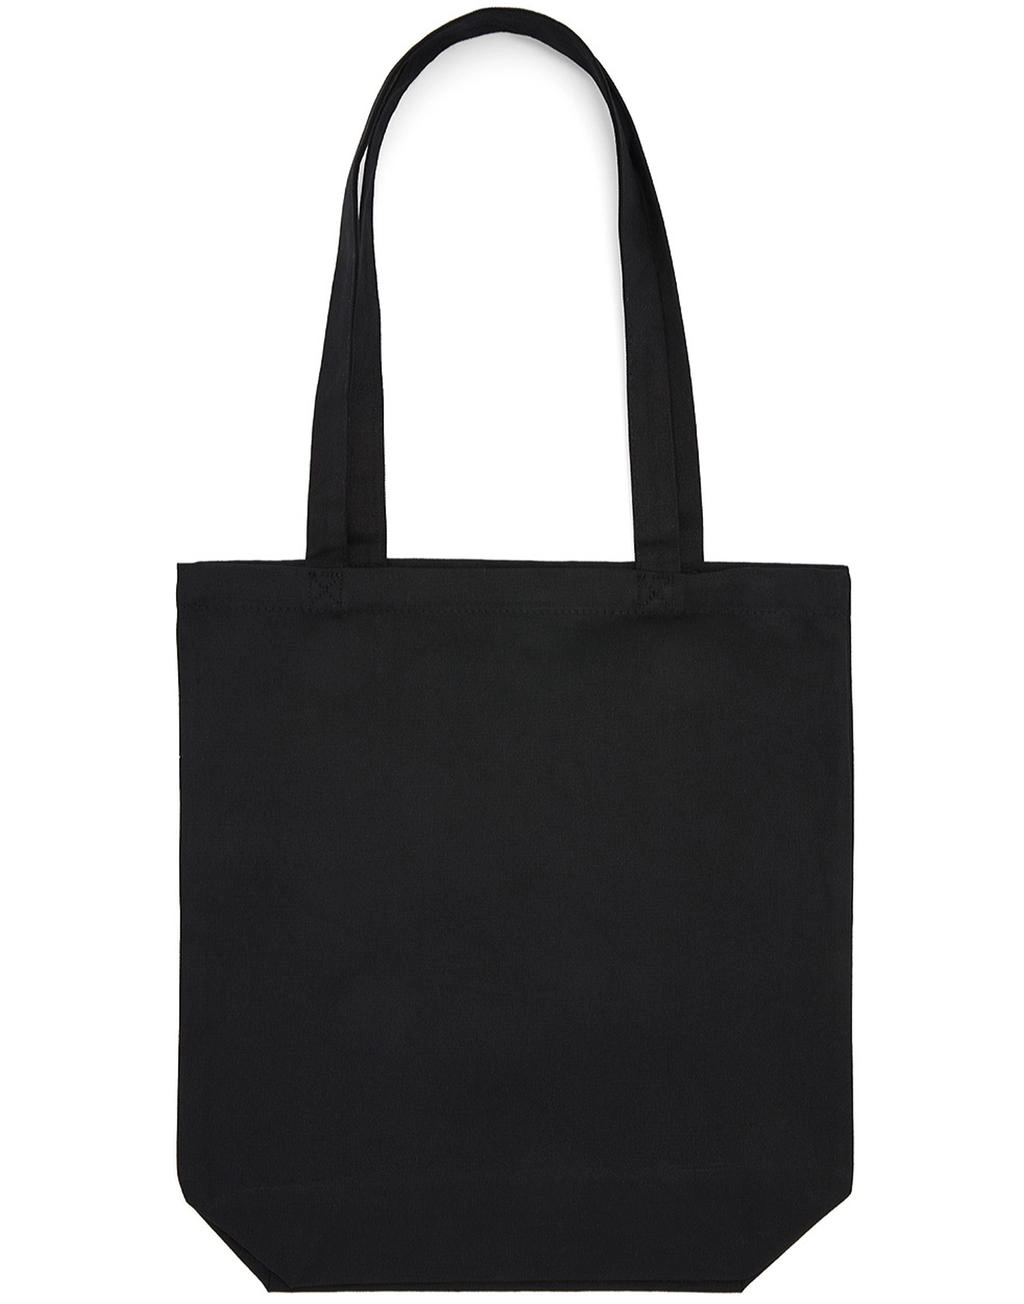 Baby Canvas Cotton Bag LH with Gusset zum Besticken und Bedrucken in der Farbe Black mit Ihren Logo, Schriftzug oder Motiv.